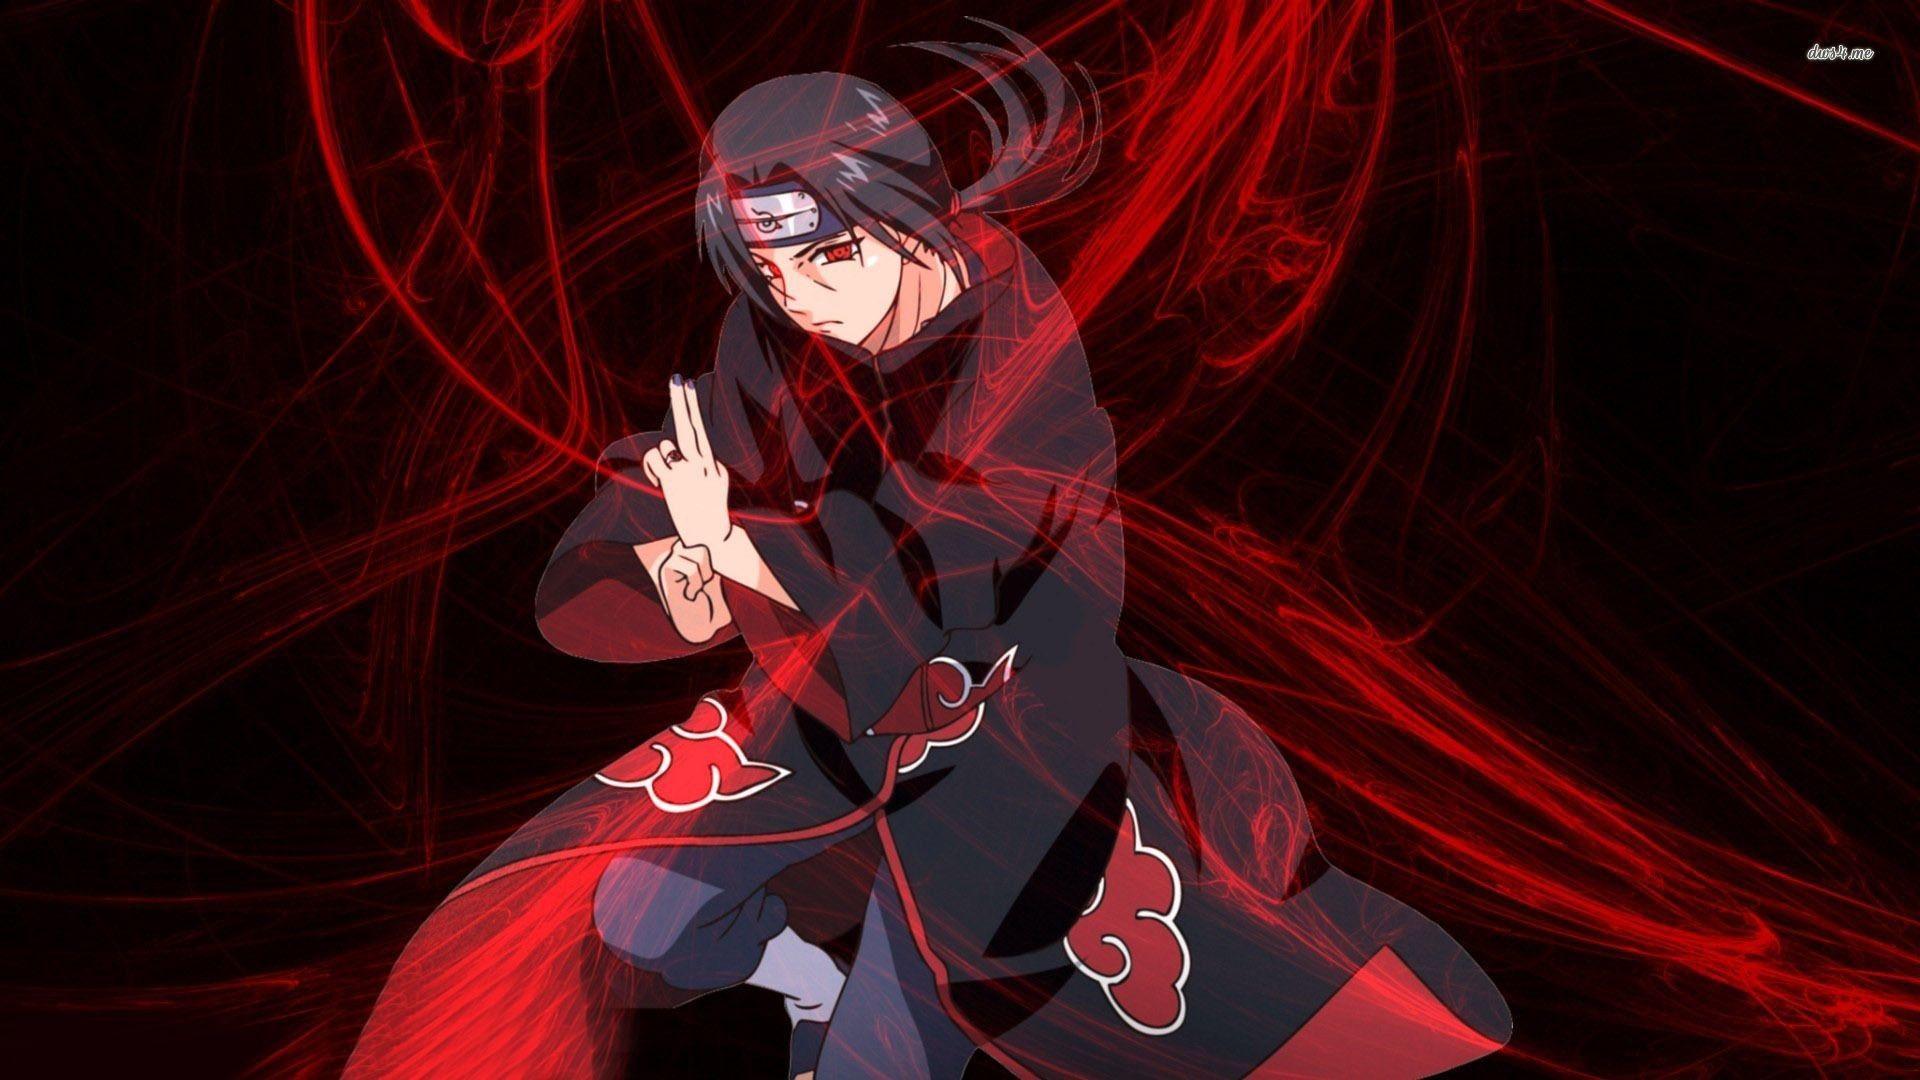 Hình nền  Anime Naruto Shippuuden Uchiha Sasuke Uchiha Itachi Trò  chơi Ảnh chụp màn hình hiệu ứng đặc biệt 2000x797  microcosmos  48244  Hình  nền đẹp hd  WallHere